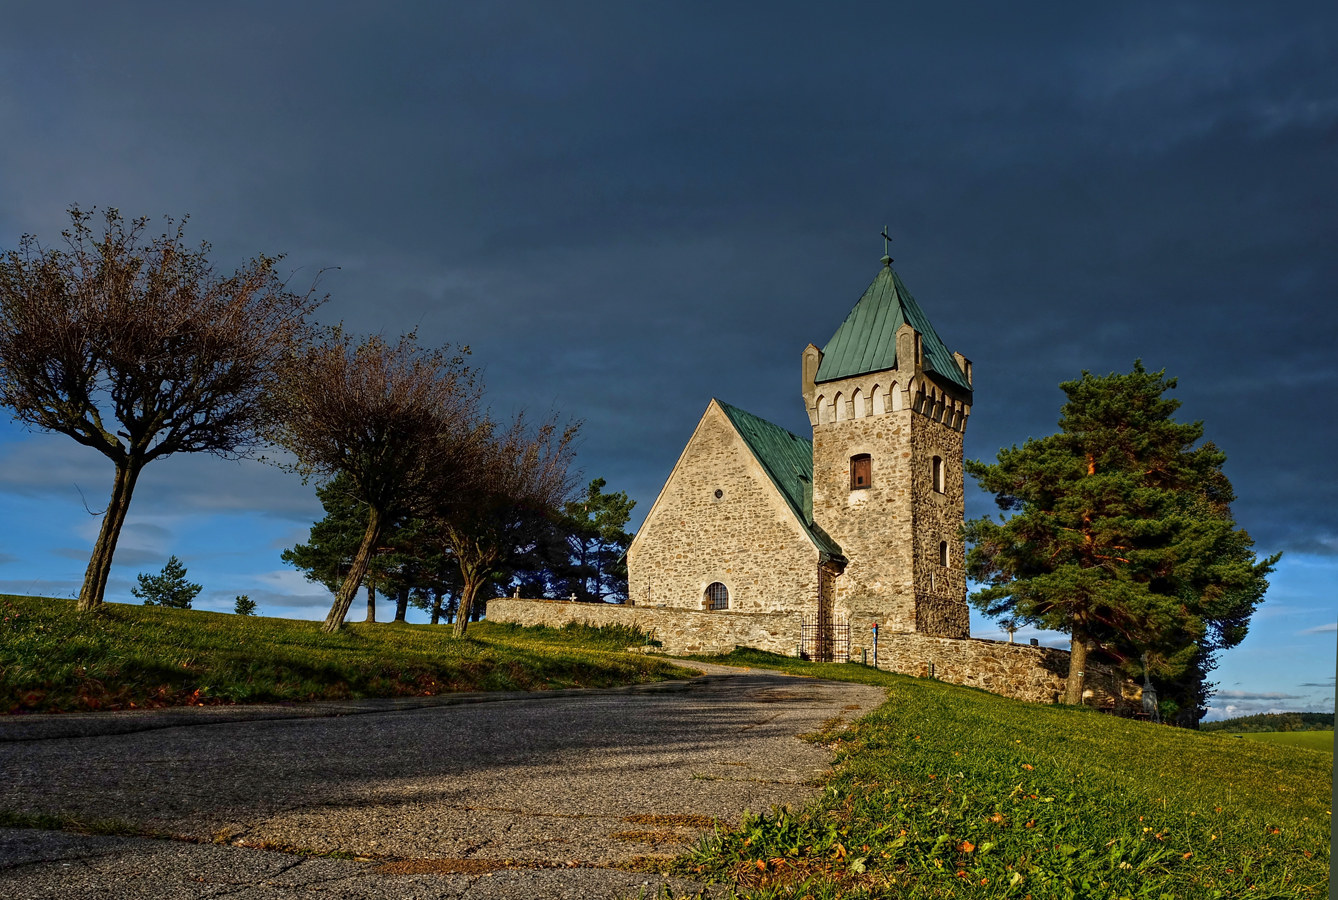 Nad vesnicí Vítochov, dnes součástí Bystřice nad Pernštejnem, stojí kamenný, raně gotický poutní kostel sv. Michaela archanděla z 13. stol.